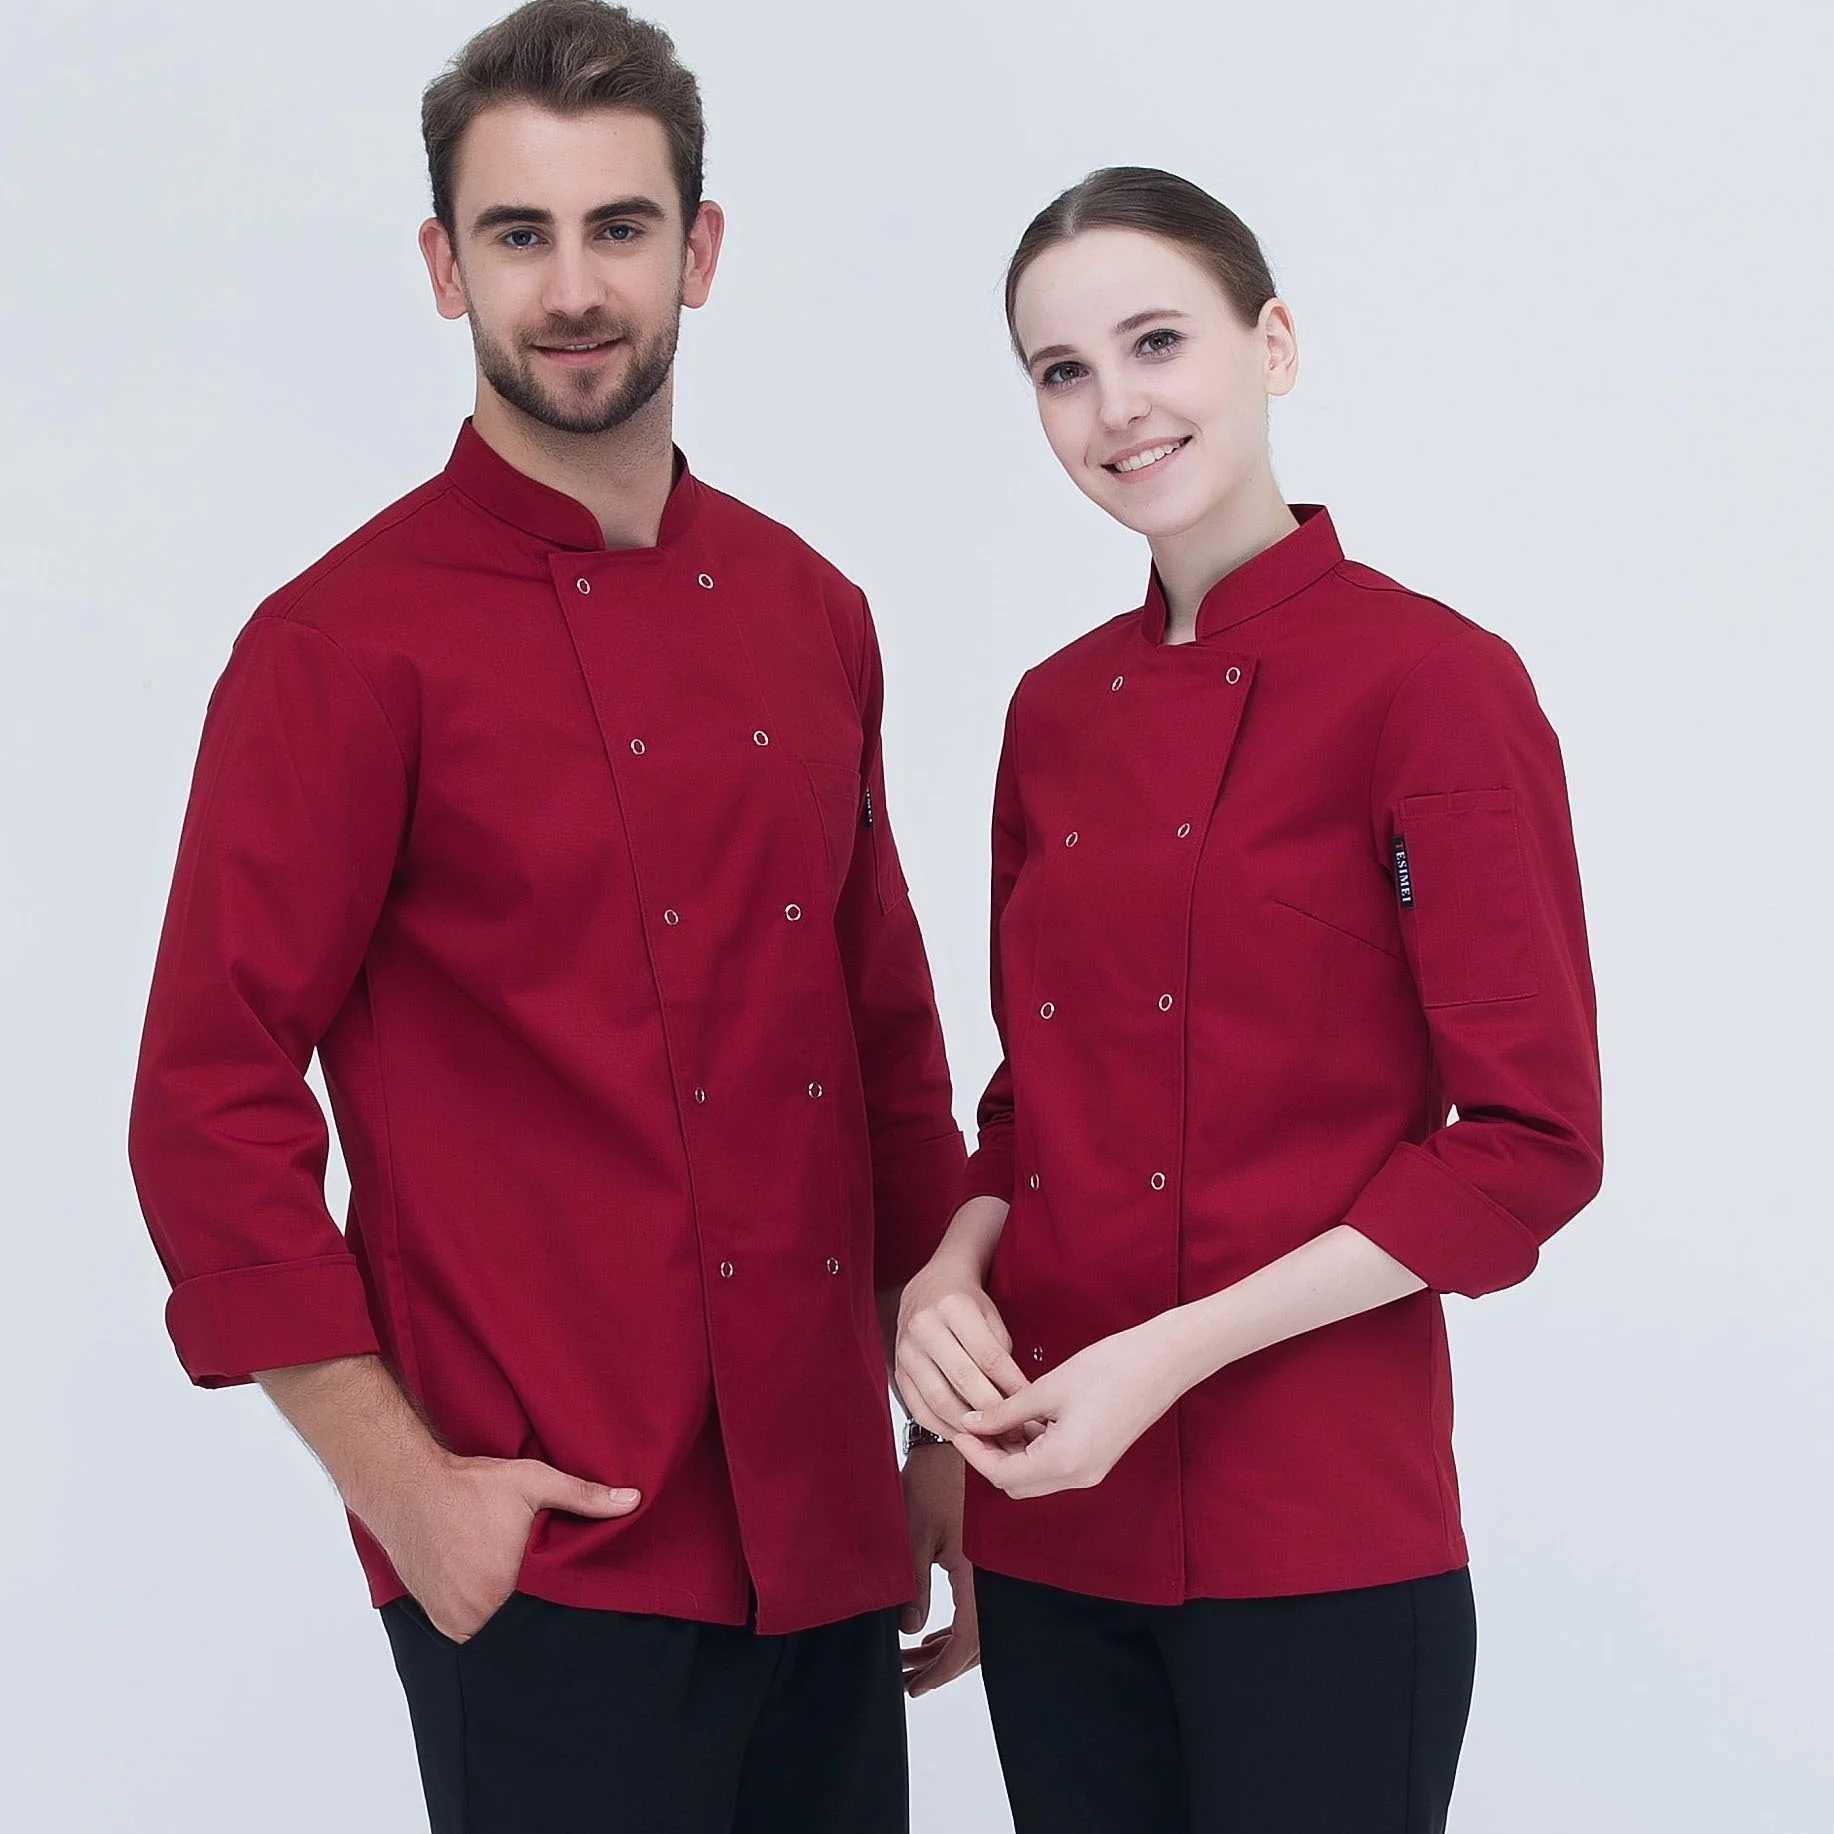 Autres vêtements Veste de chef à manches longues unisexe hommes femmes restaurant hôtel cuisinier manteau cuisine vêtements serveur boulanger uniforme